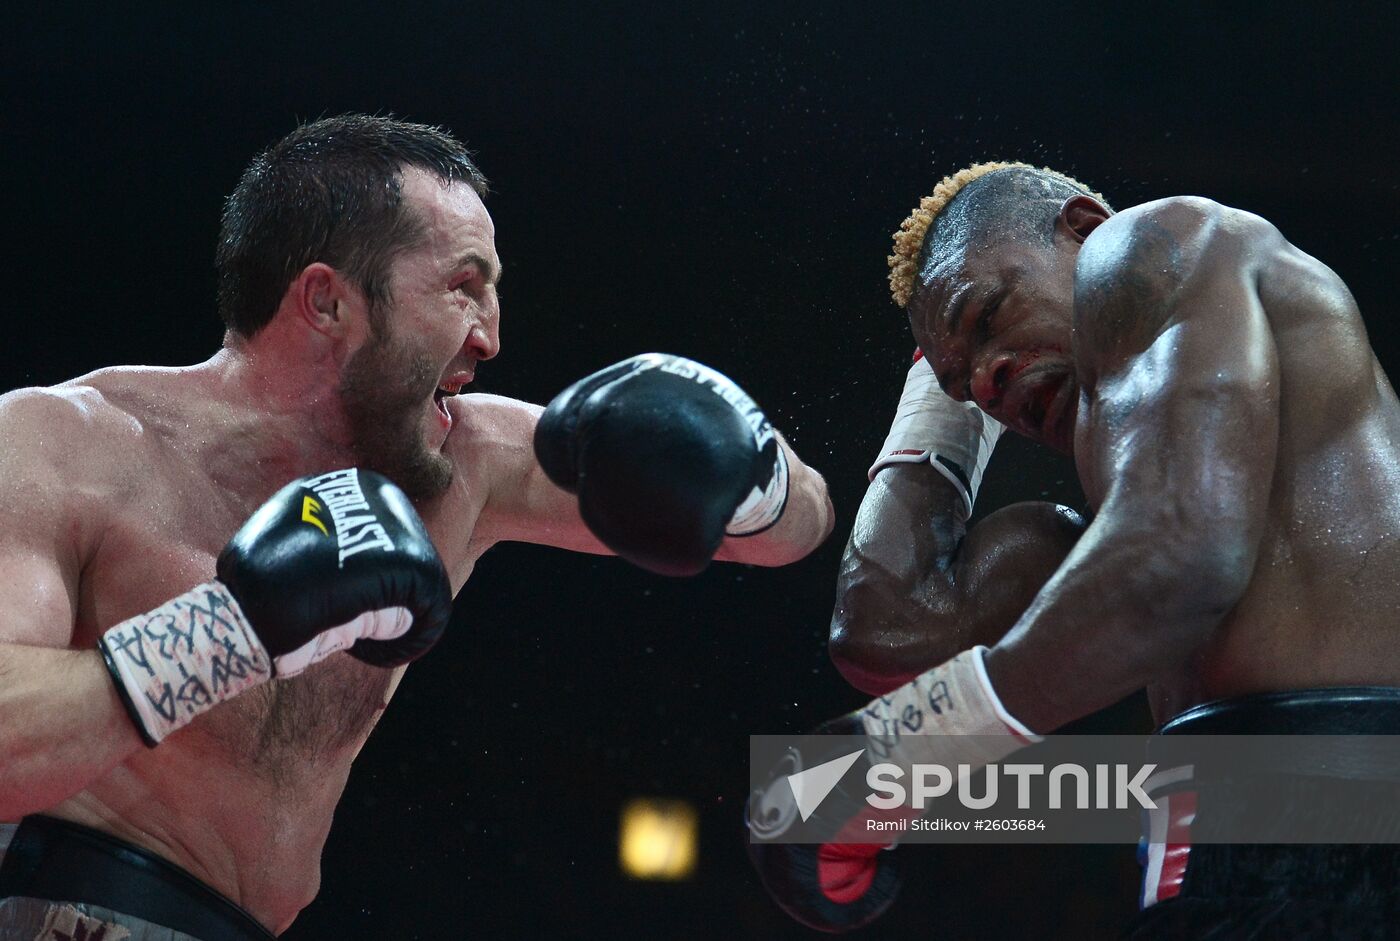 Boxing. Denis Lebedev vs. Youri Kalenga